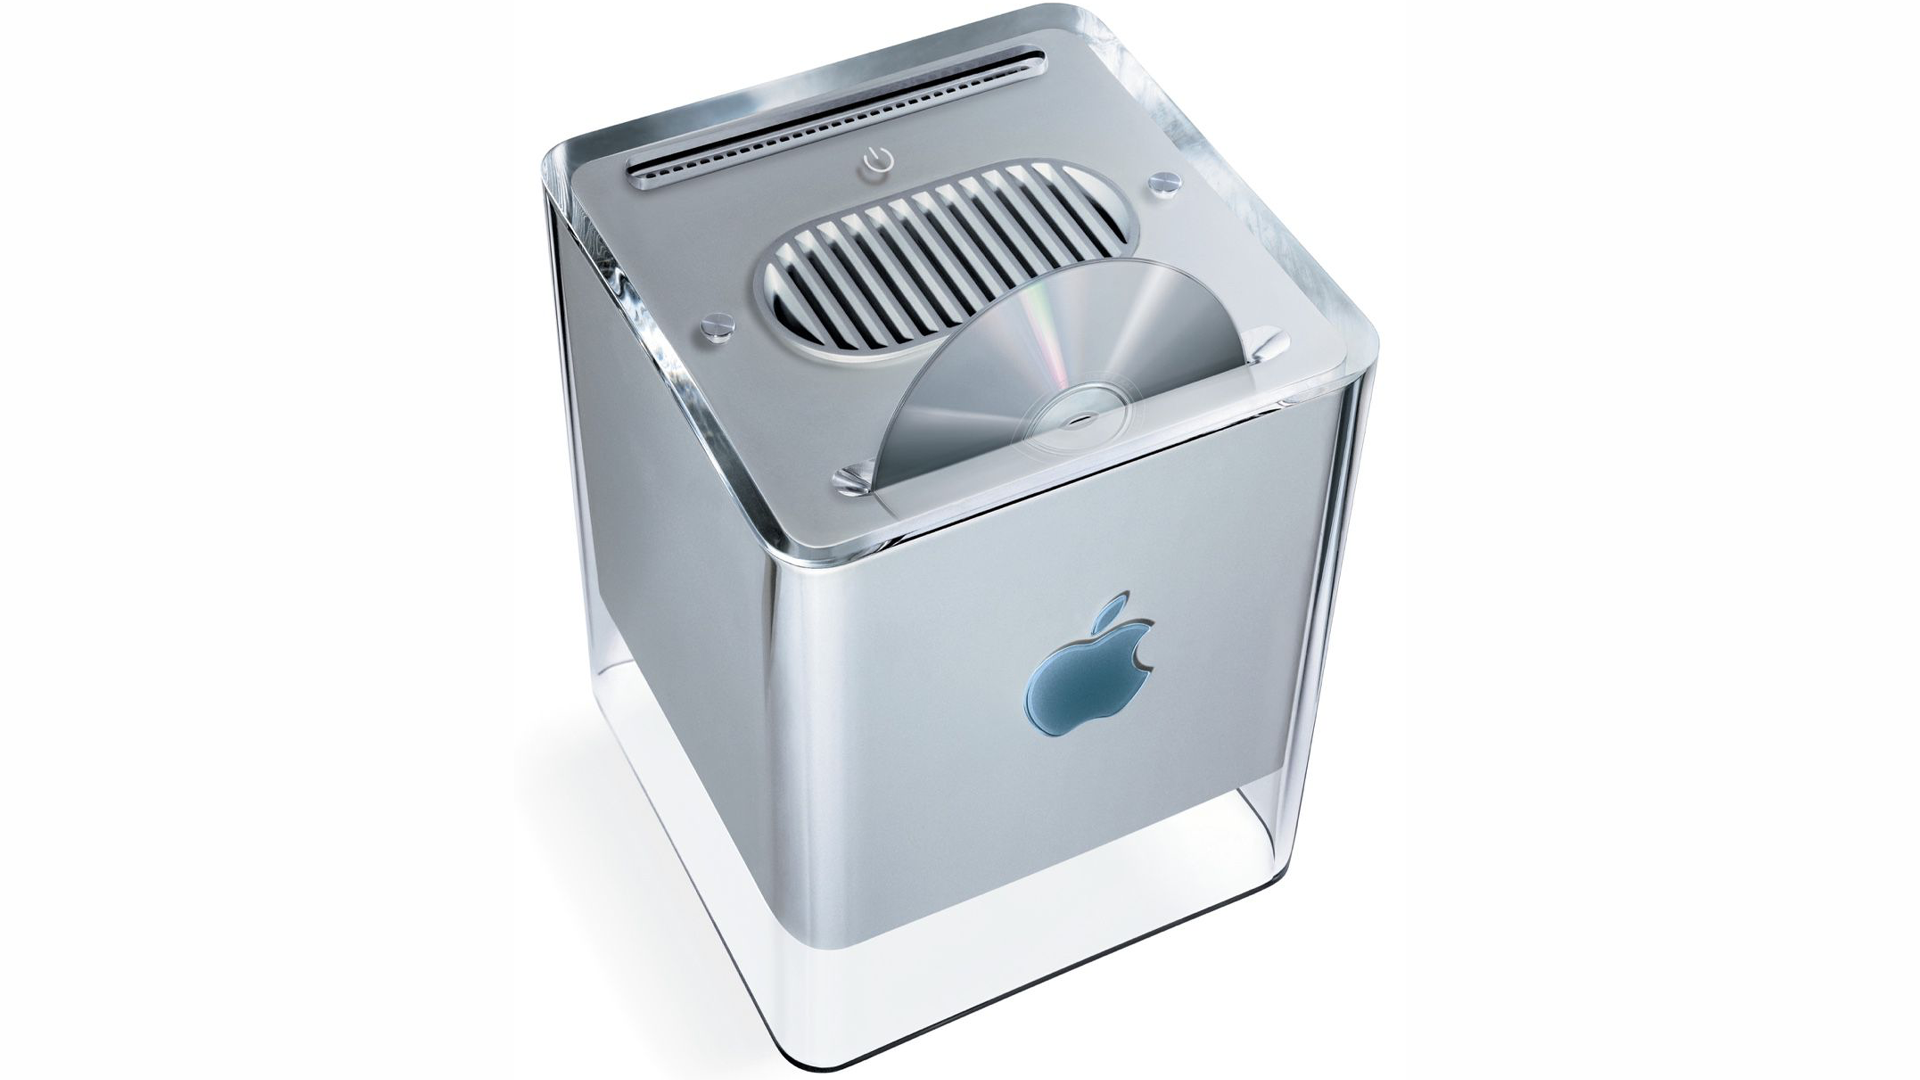 Mac G4 Cube